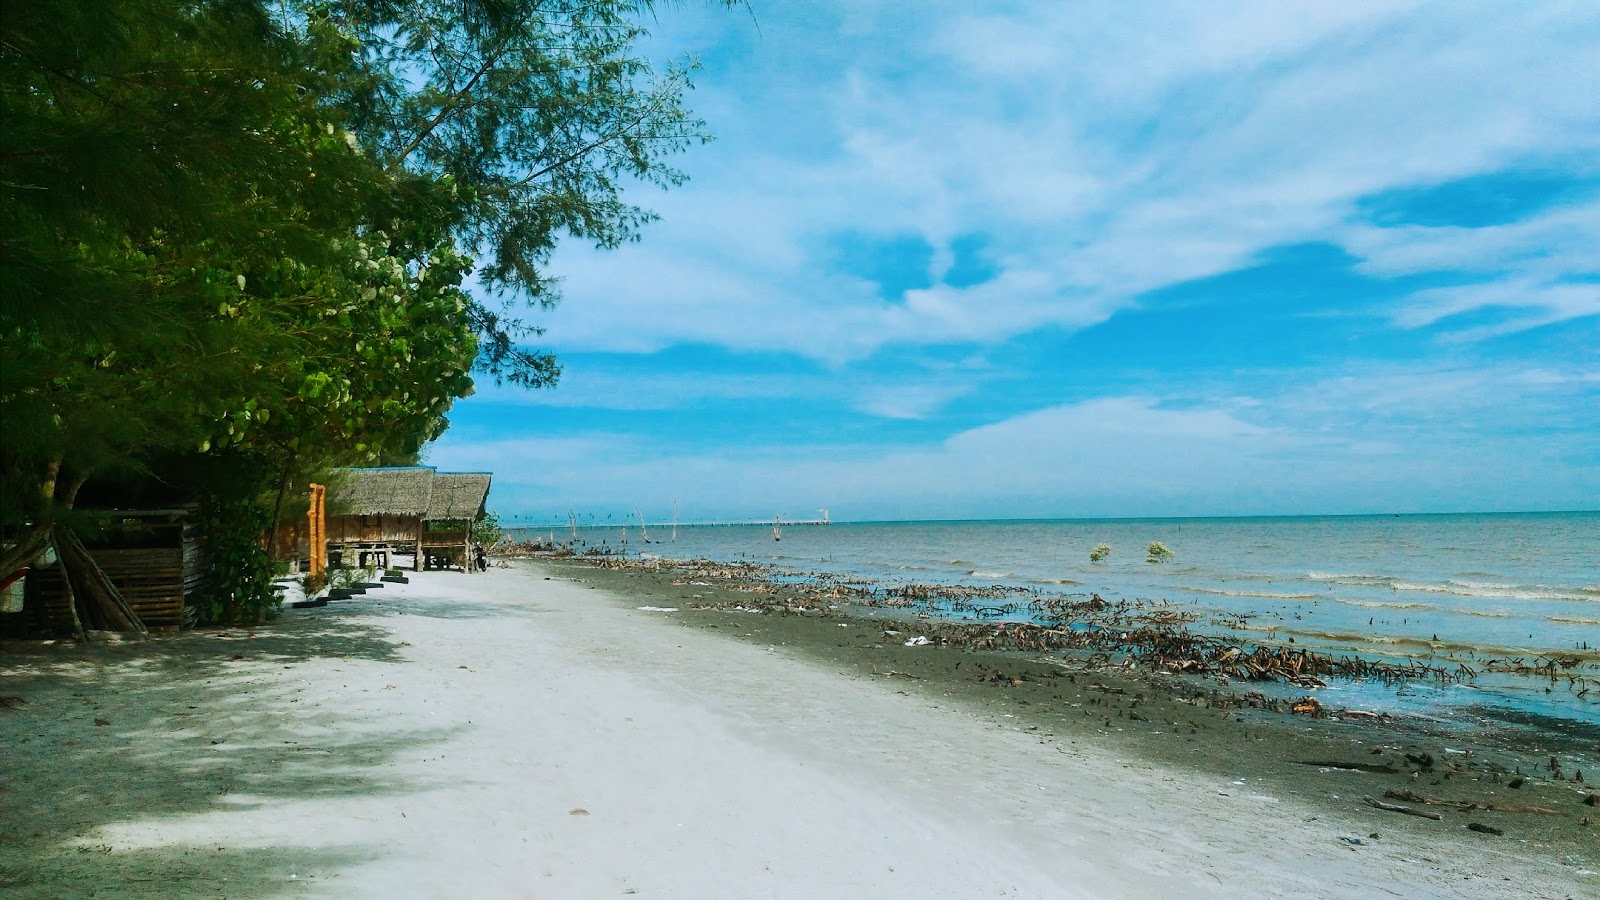 Tanjung Sepat Beach'in fotoğrafı geniş plaj ile birlikte